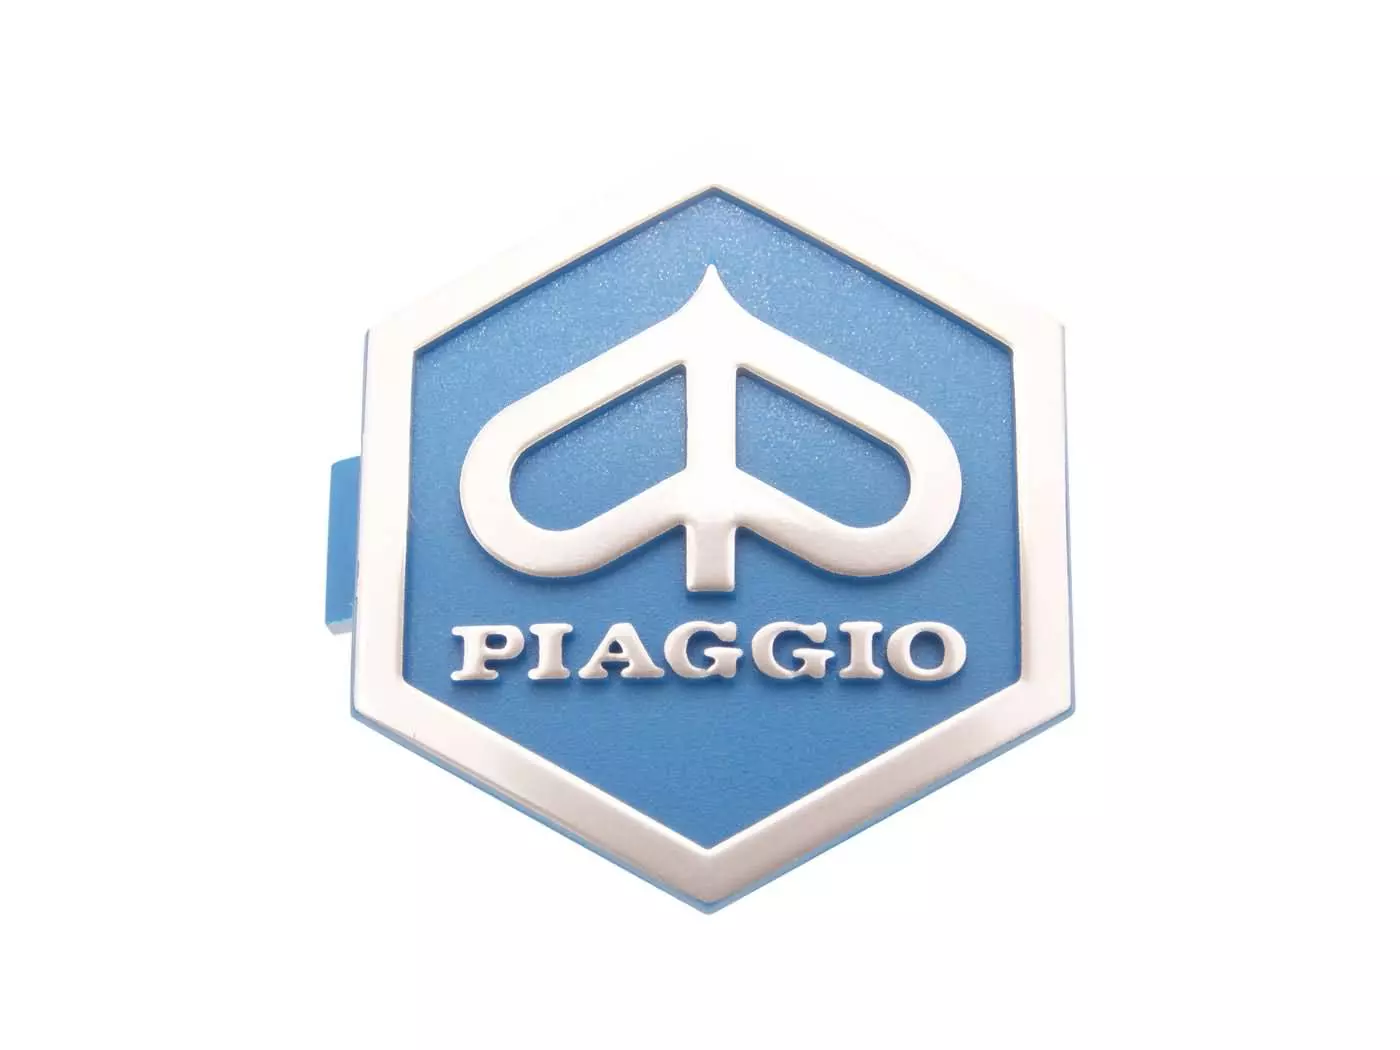 Embleem Piaggio om vast te klikken 6 hoekig 32x37mm 3D blauw / zilver